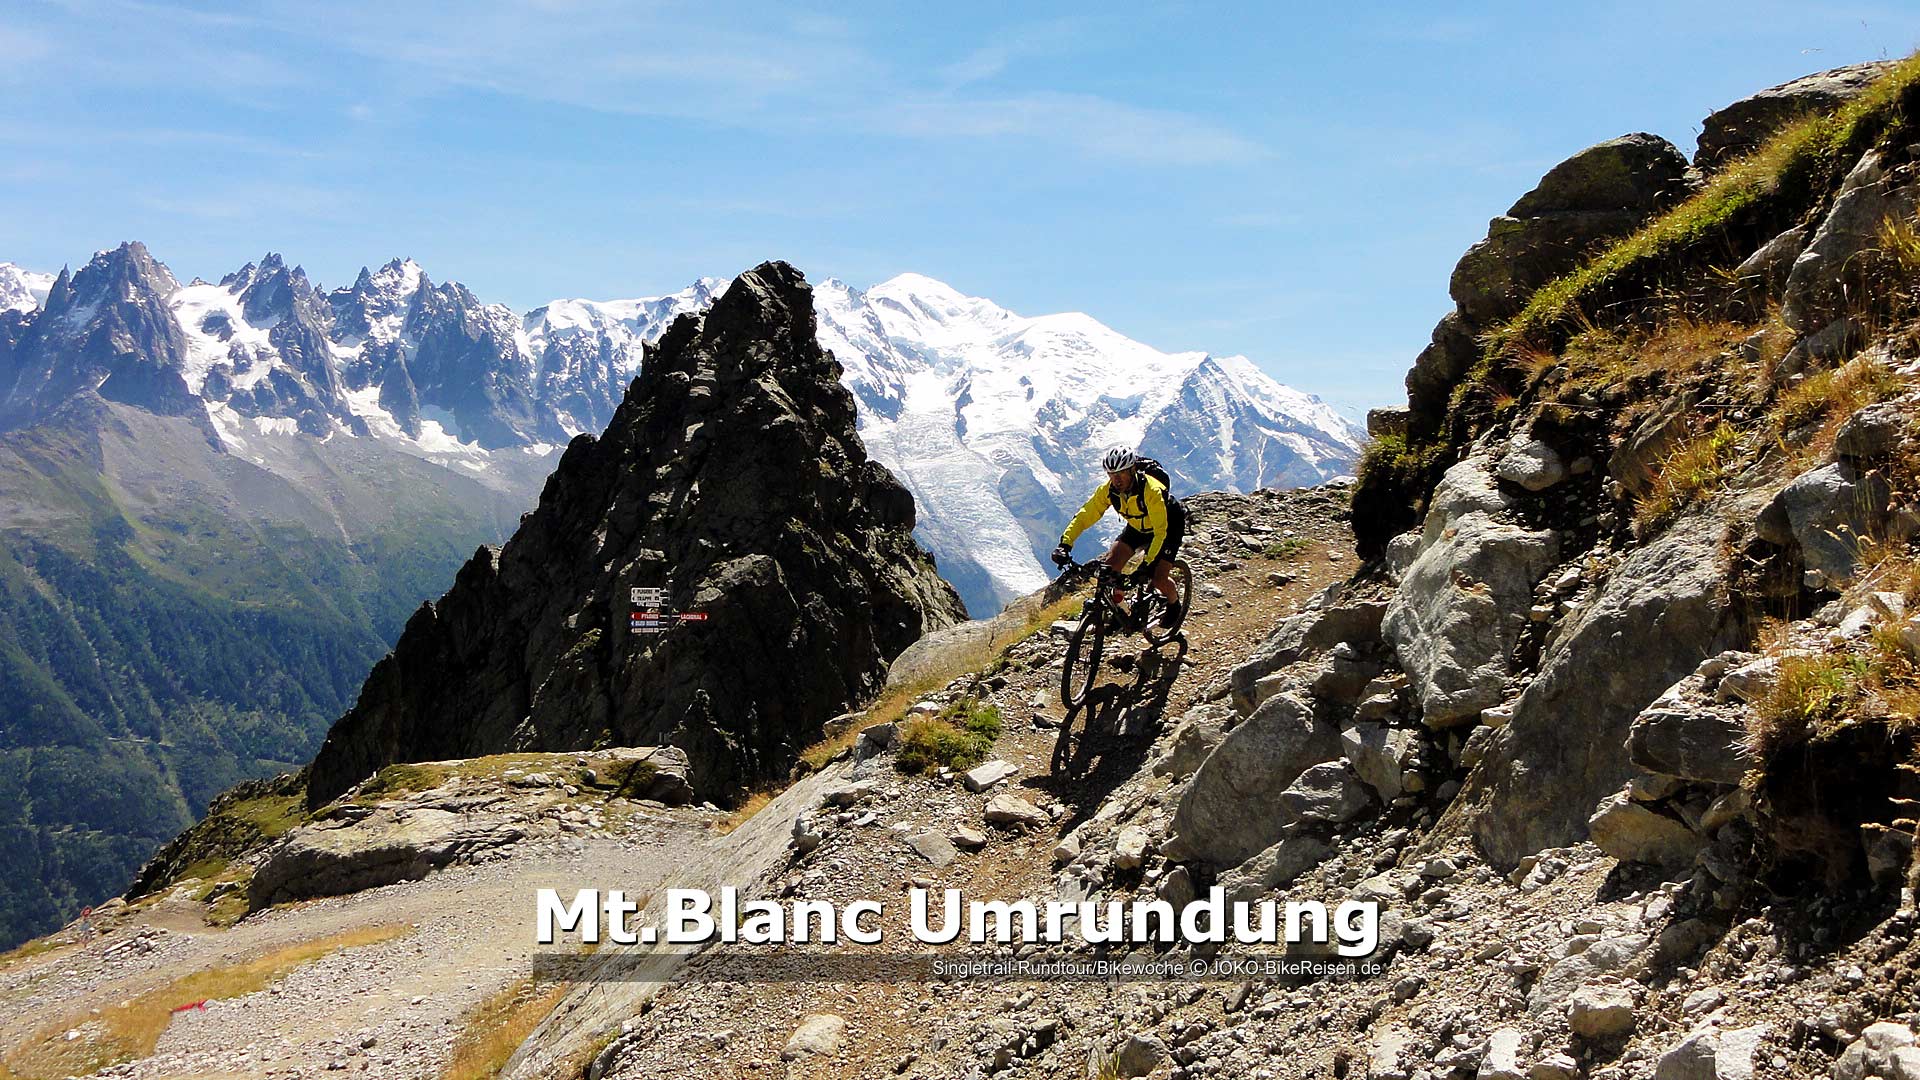 Bikewoche/Mountainbike Montblanc Umrundung/Singletrail